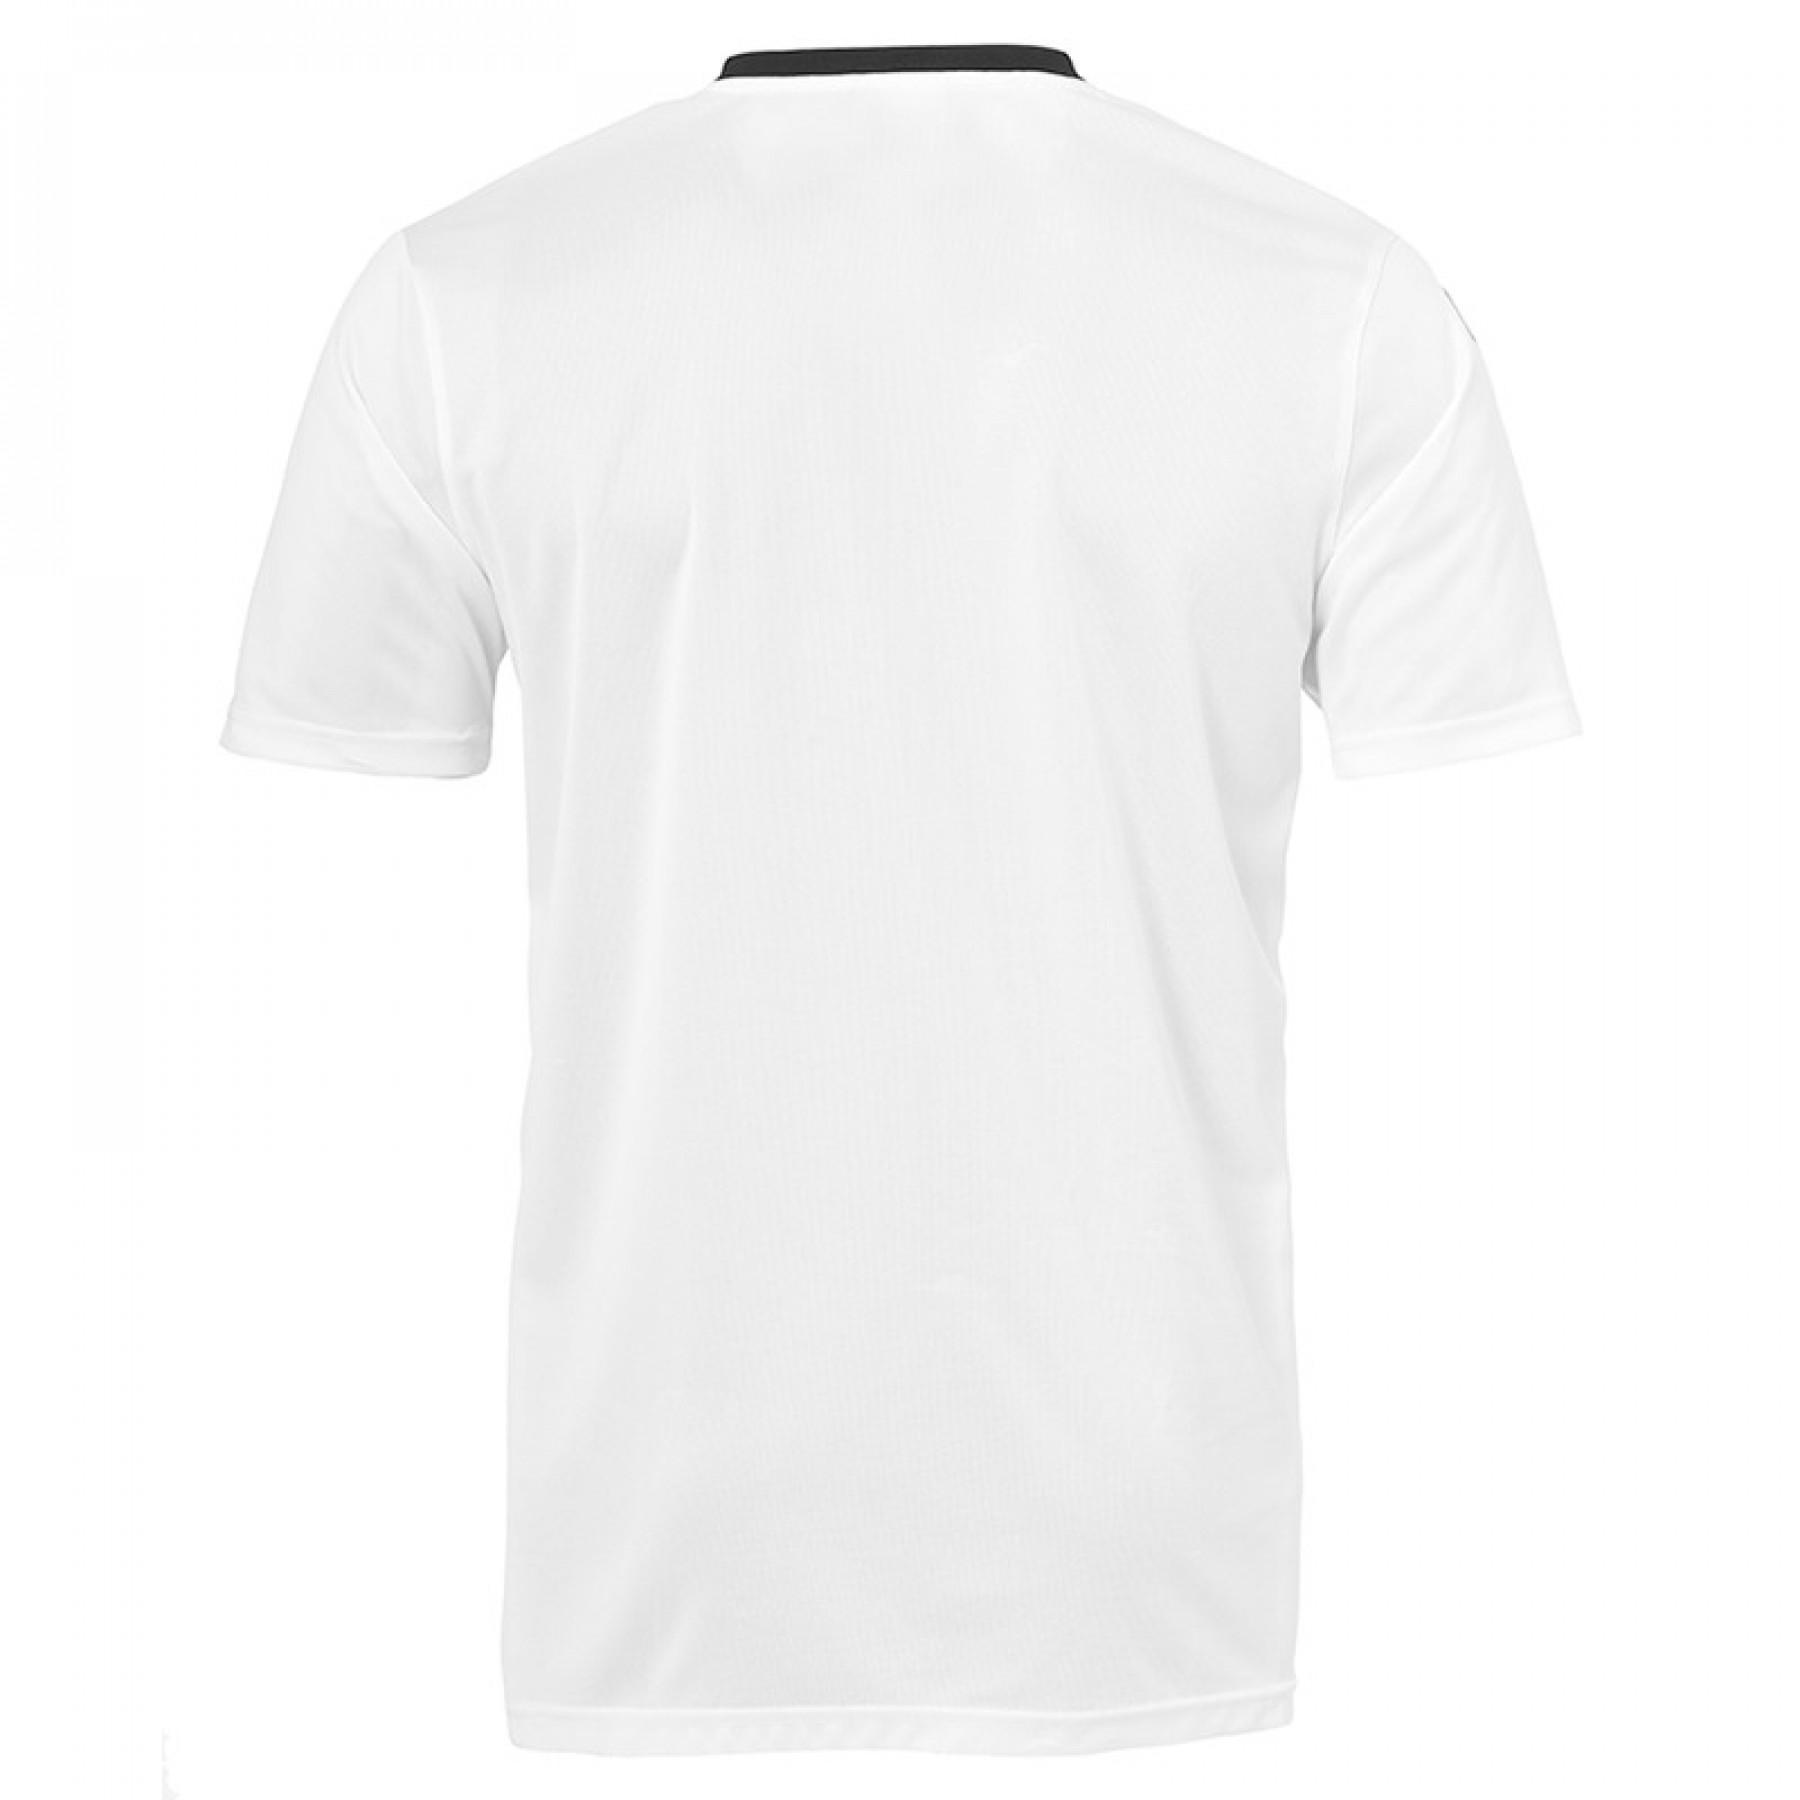 Camiseta portero Uhlsport Goal